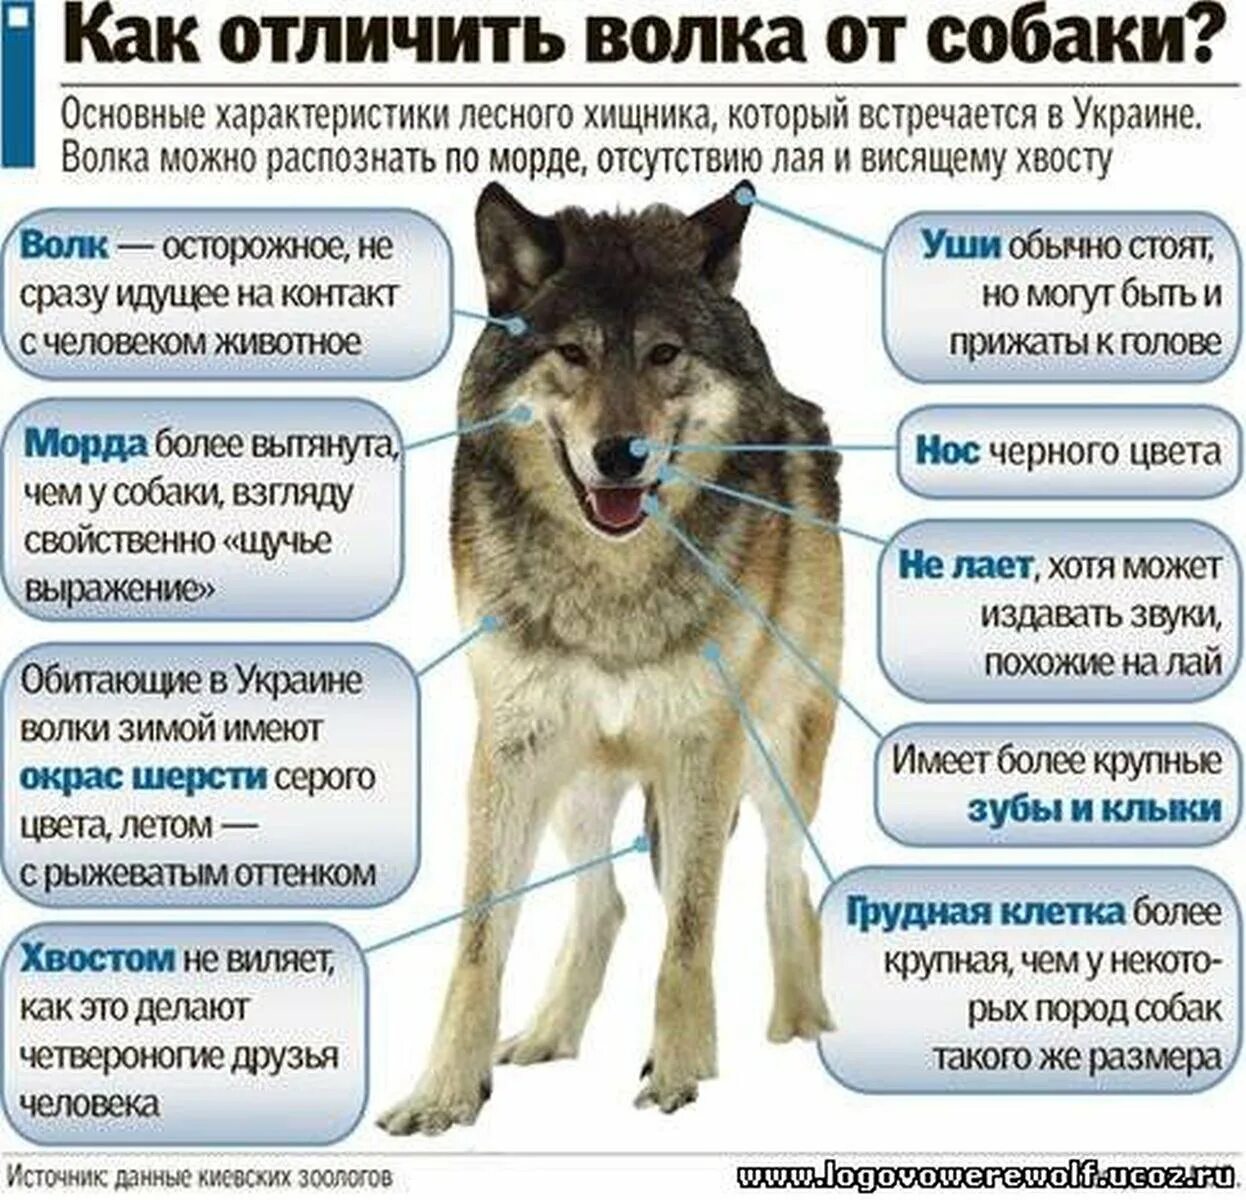 Географические признаки волка обыкновенного в каких. Собака волкособ. Лайки волкособы. Порода собаки волкособ характер. Внешние отличия волка от собаки.